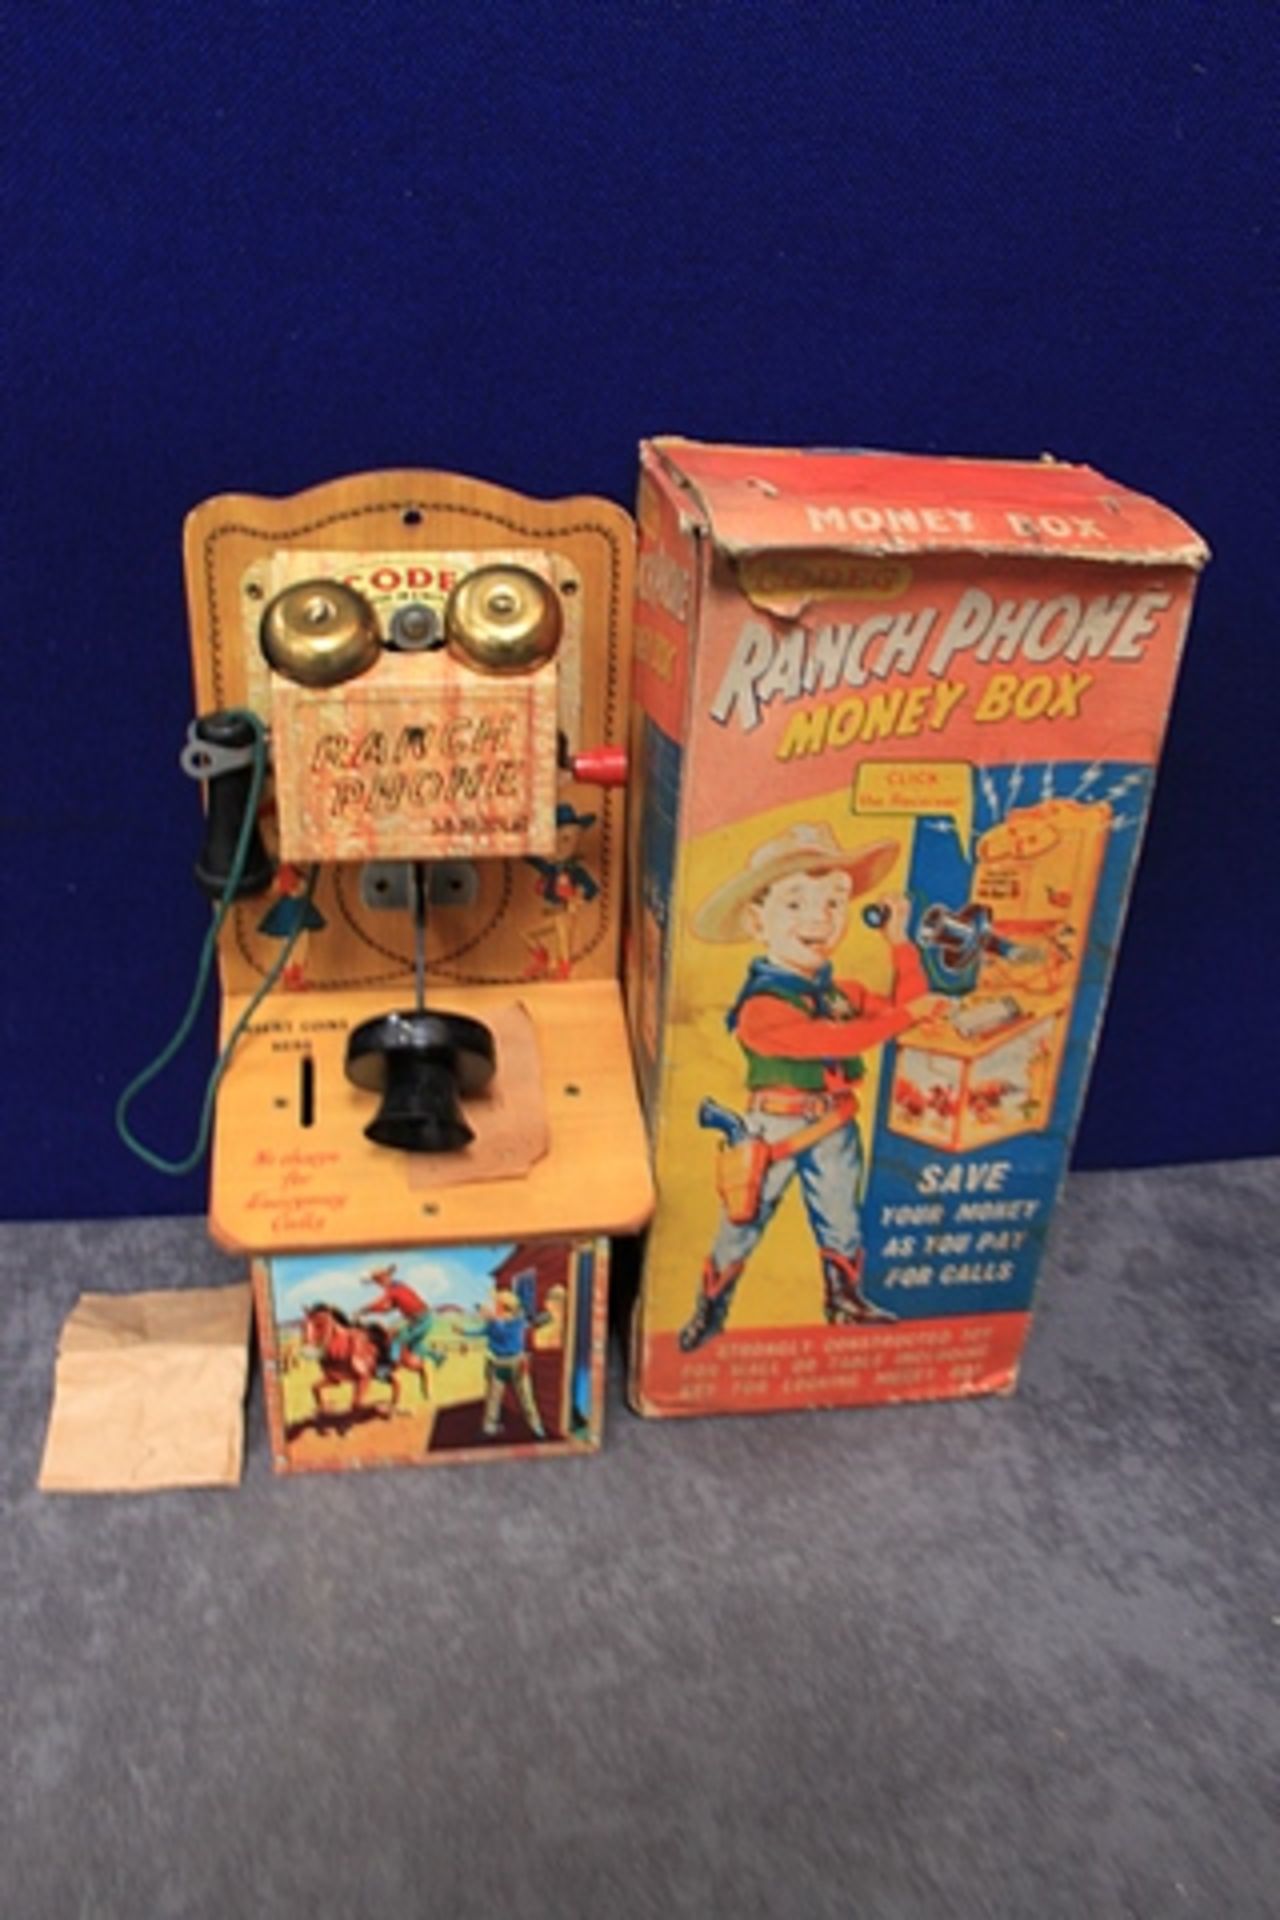 Quite Rare Codeg Ranch Phone Money Box in Box